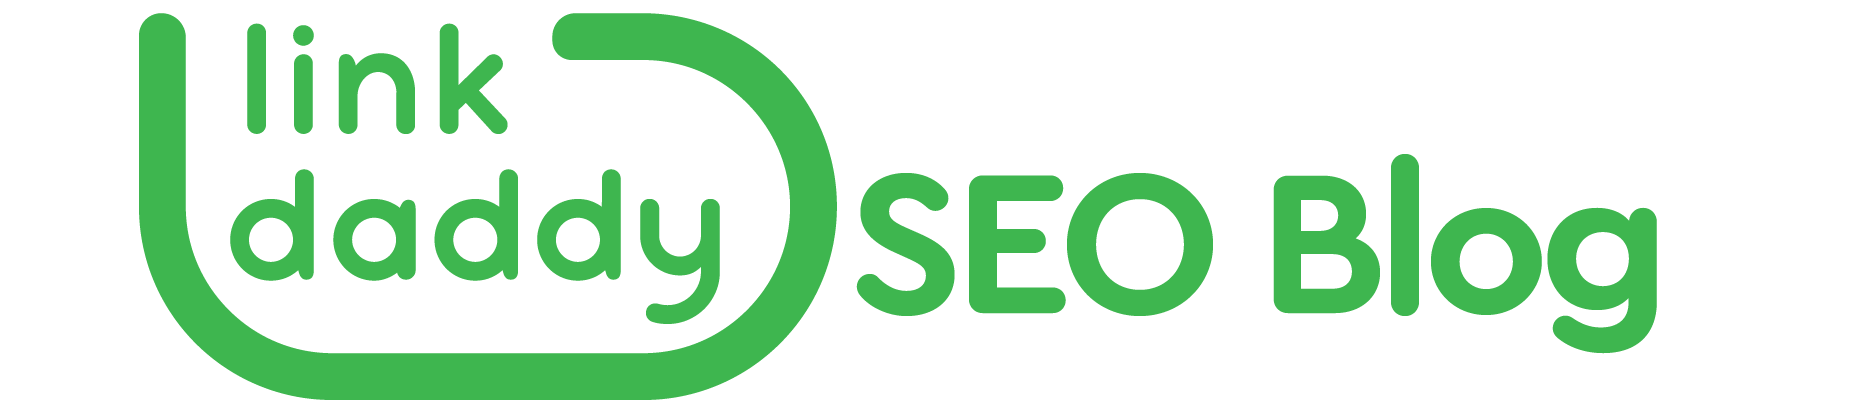 https://storage.googleapis.com/cloudsites/seo-services/861n5hjpe/img/cropped-linkdaddy-seoblog-logo.png